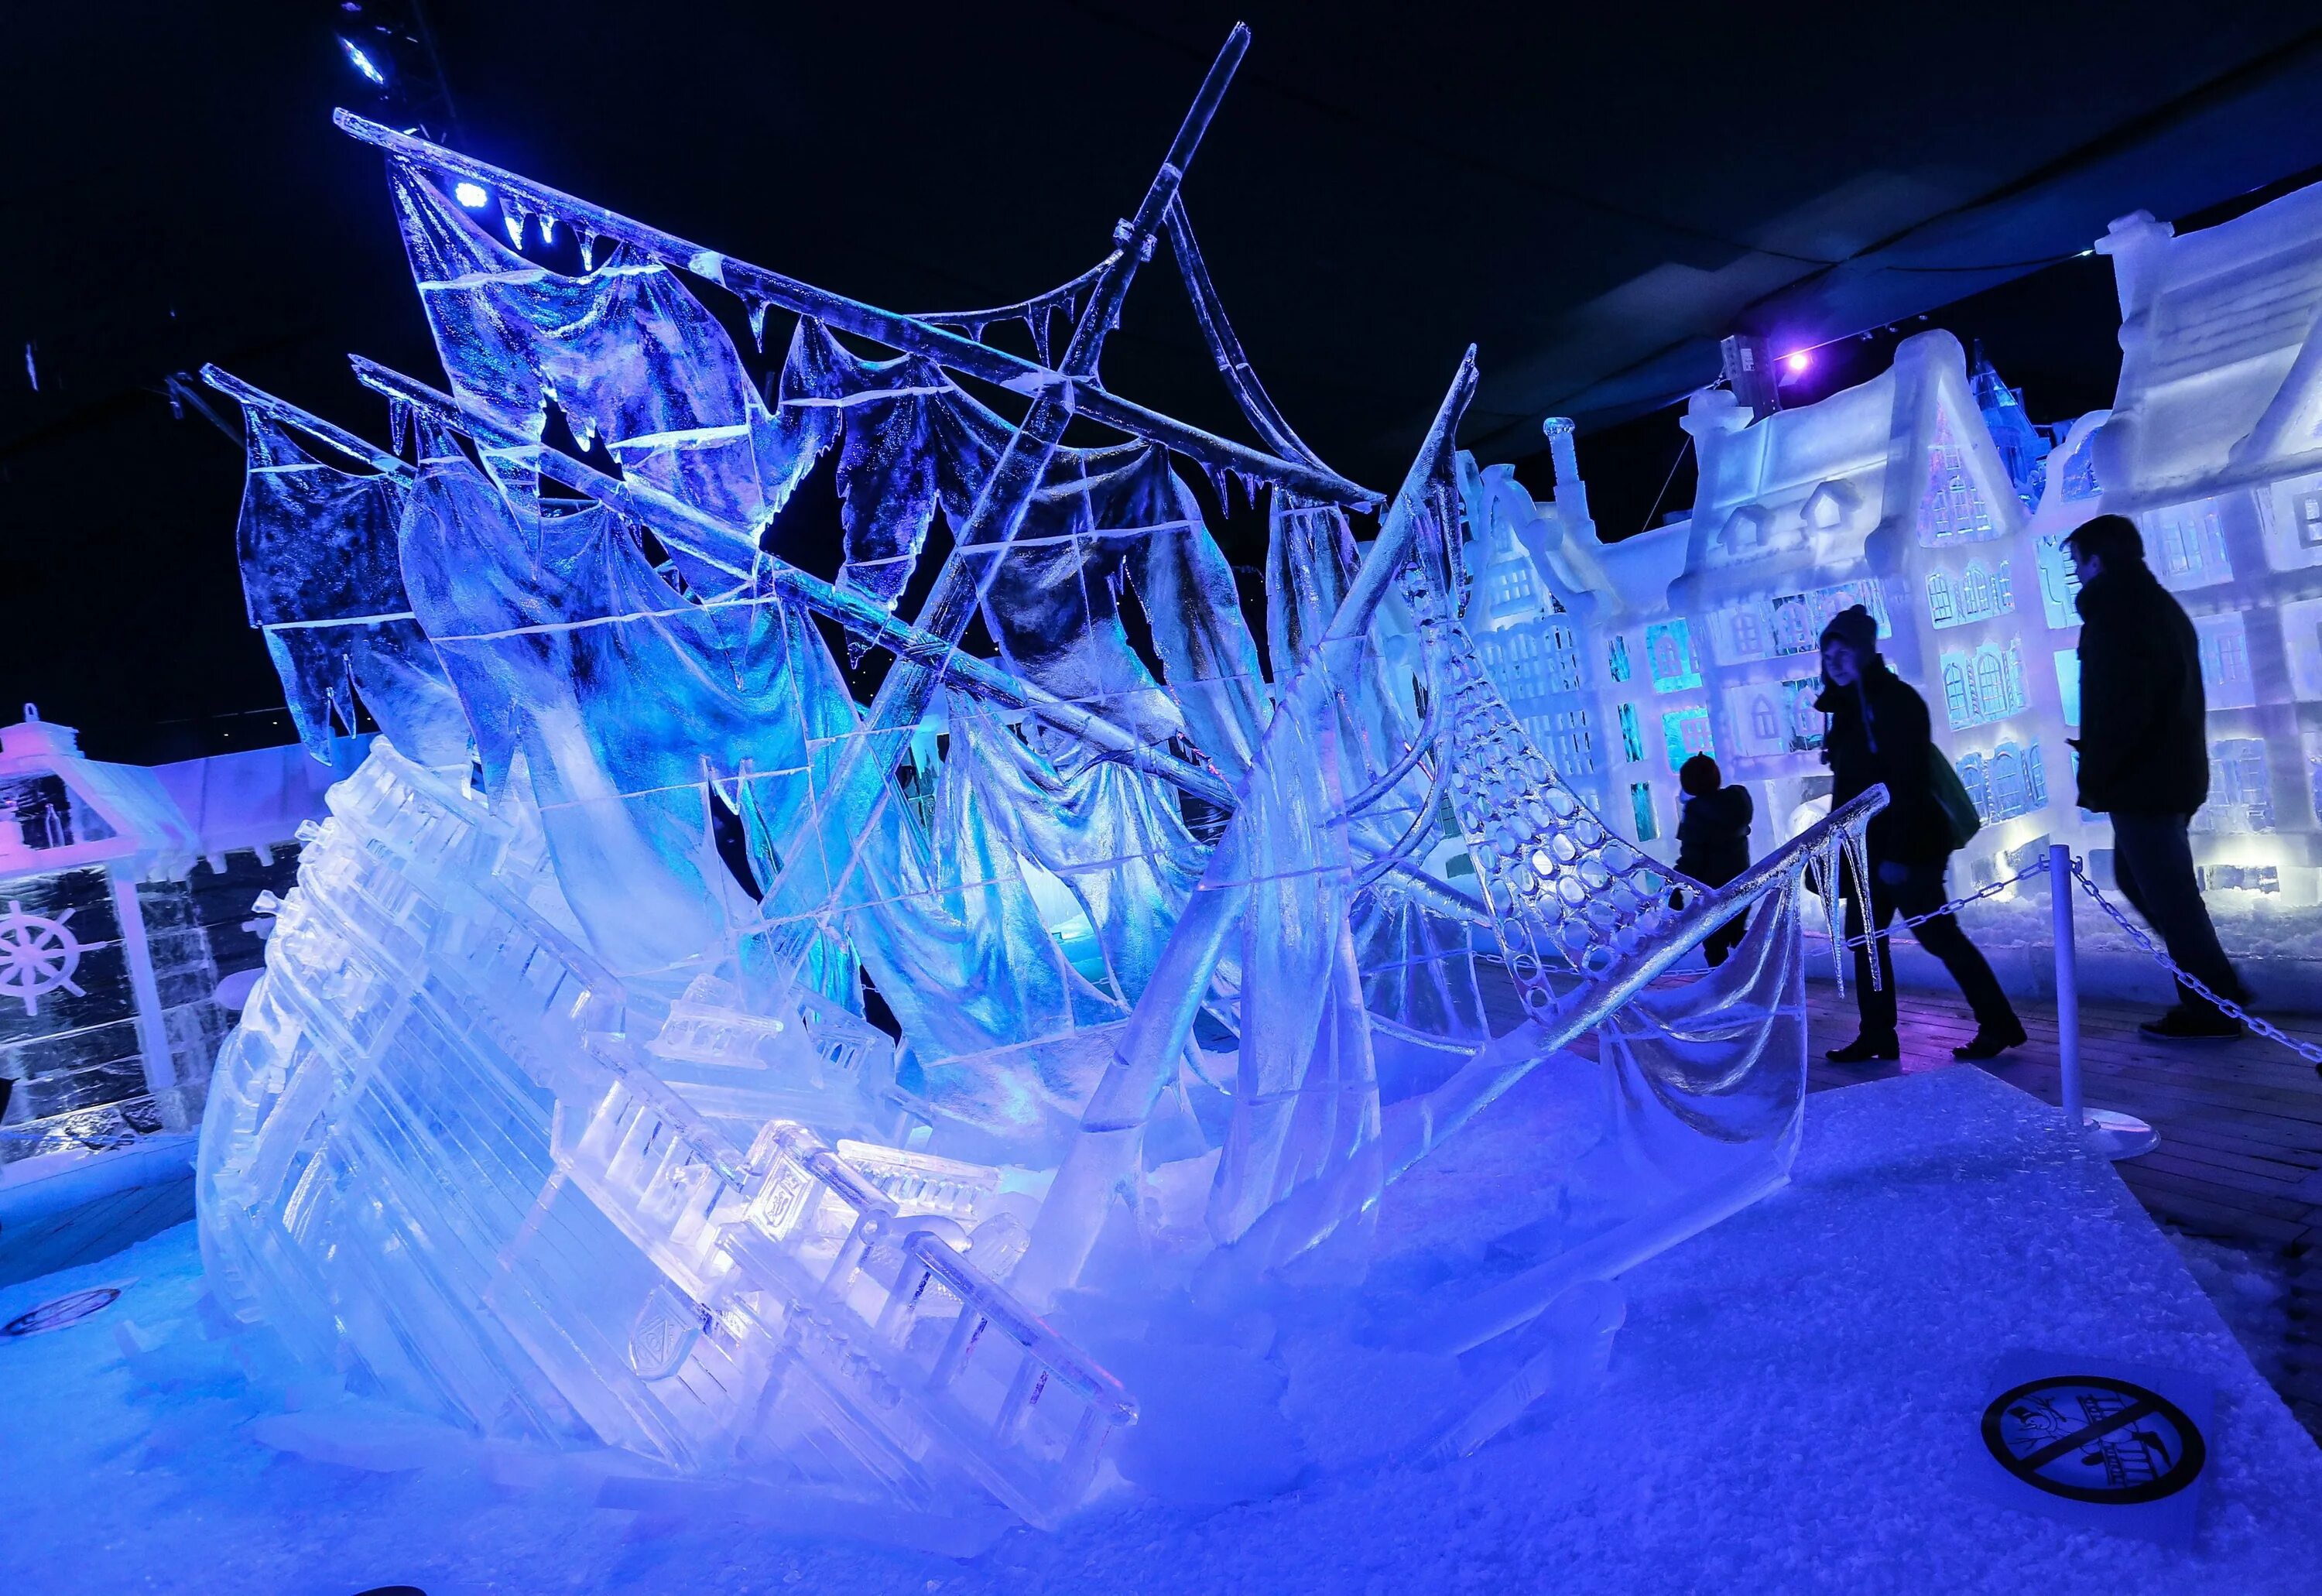 Ледяные скульптуры. Скульптуры изо льда. Фестиваль ледяных скульптур. Геометрические фигуры из льда. Тема ледового